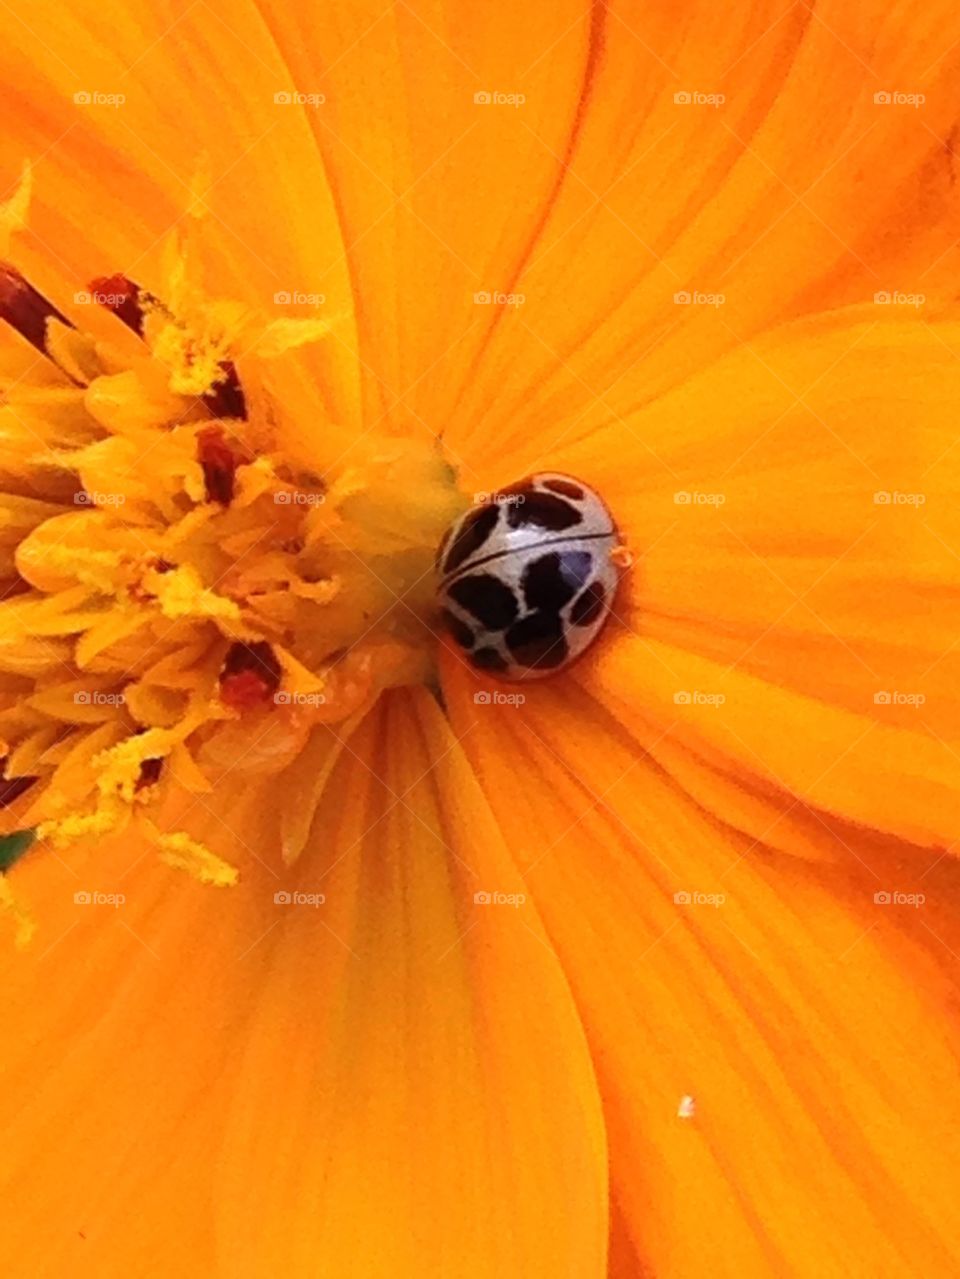 Ladybug on yellow flower